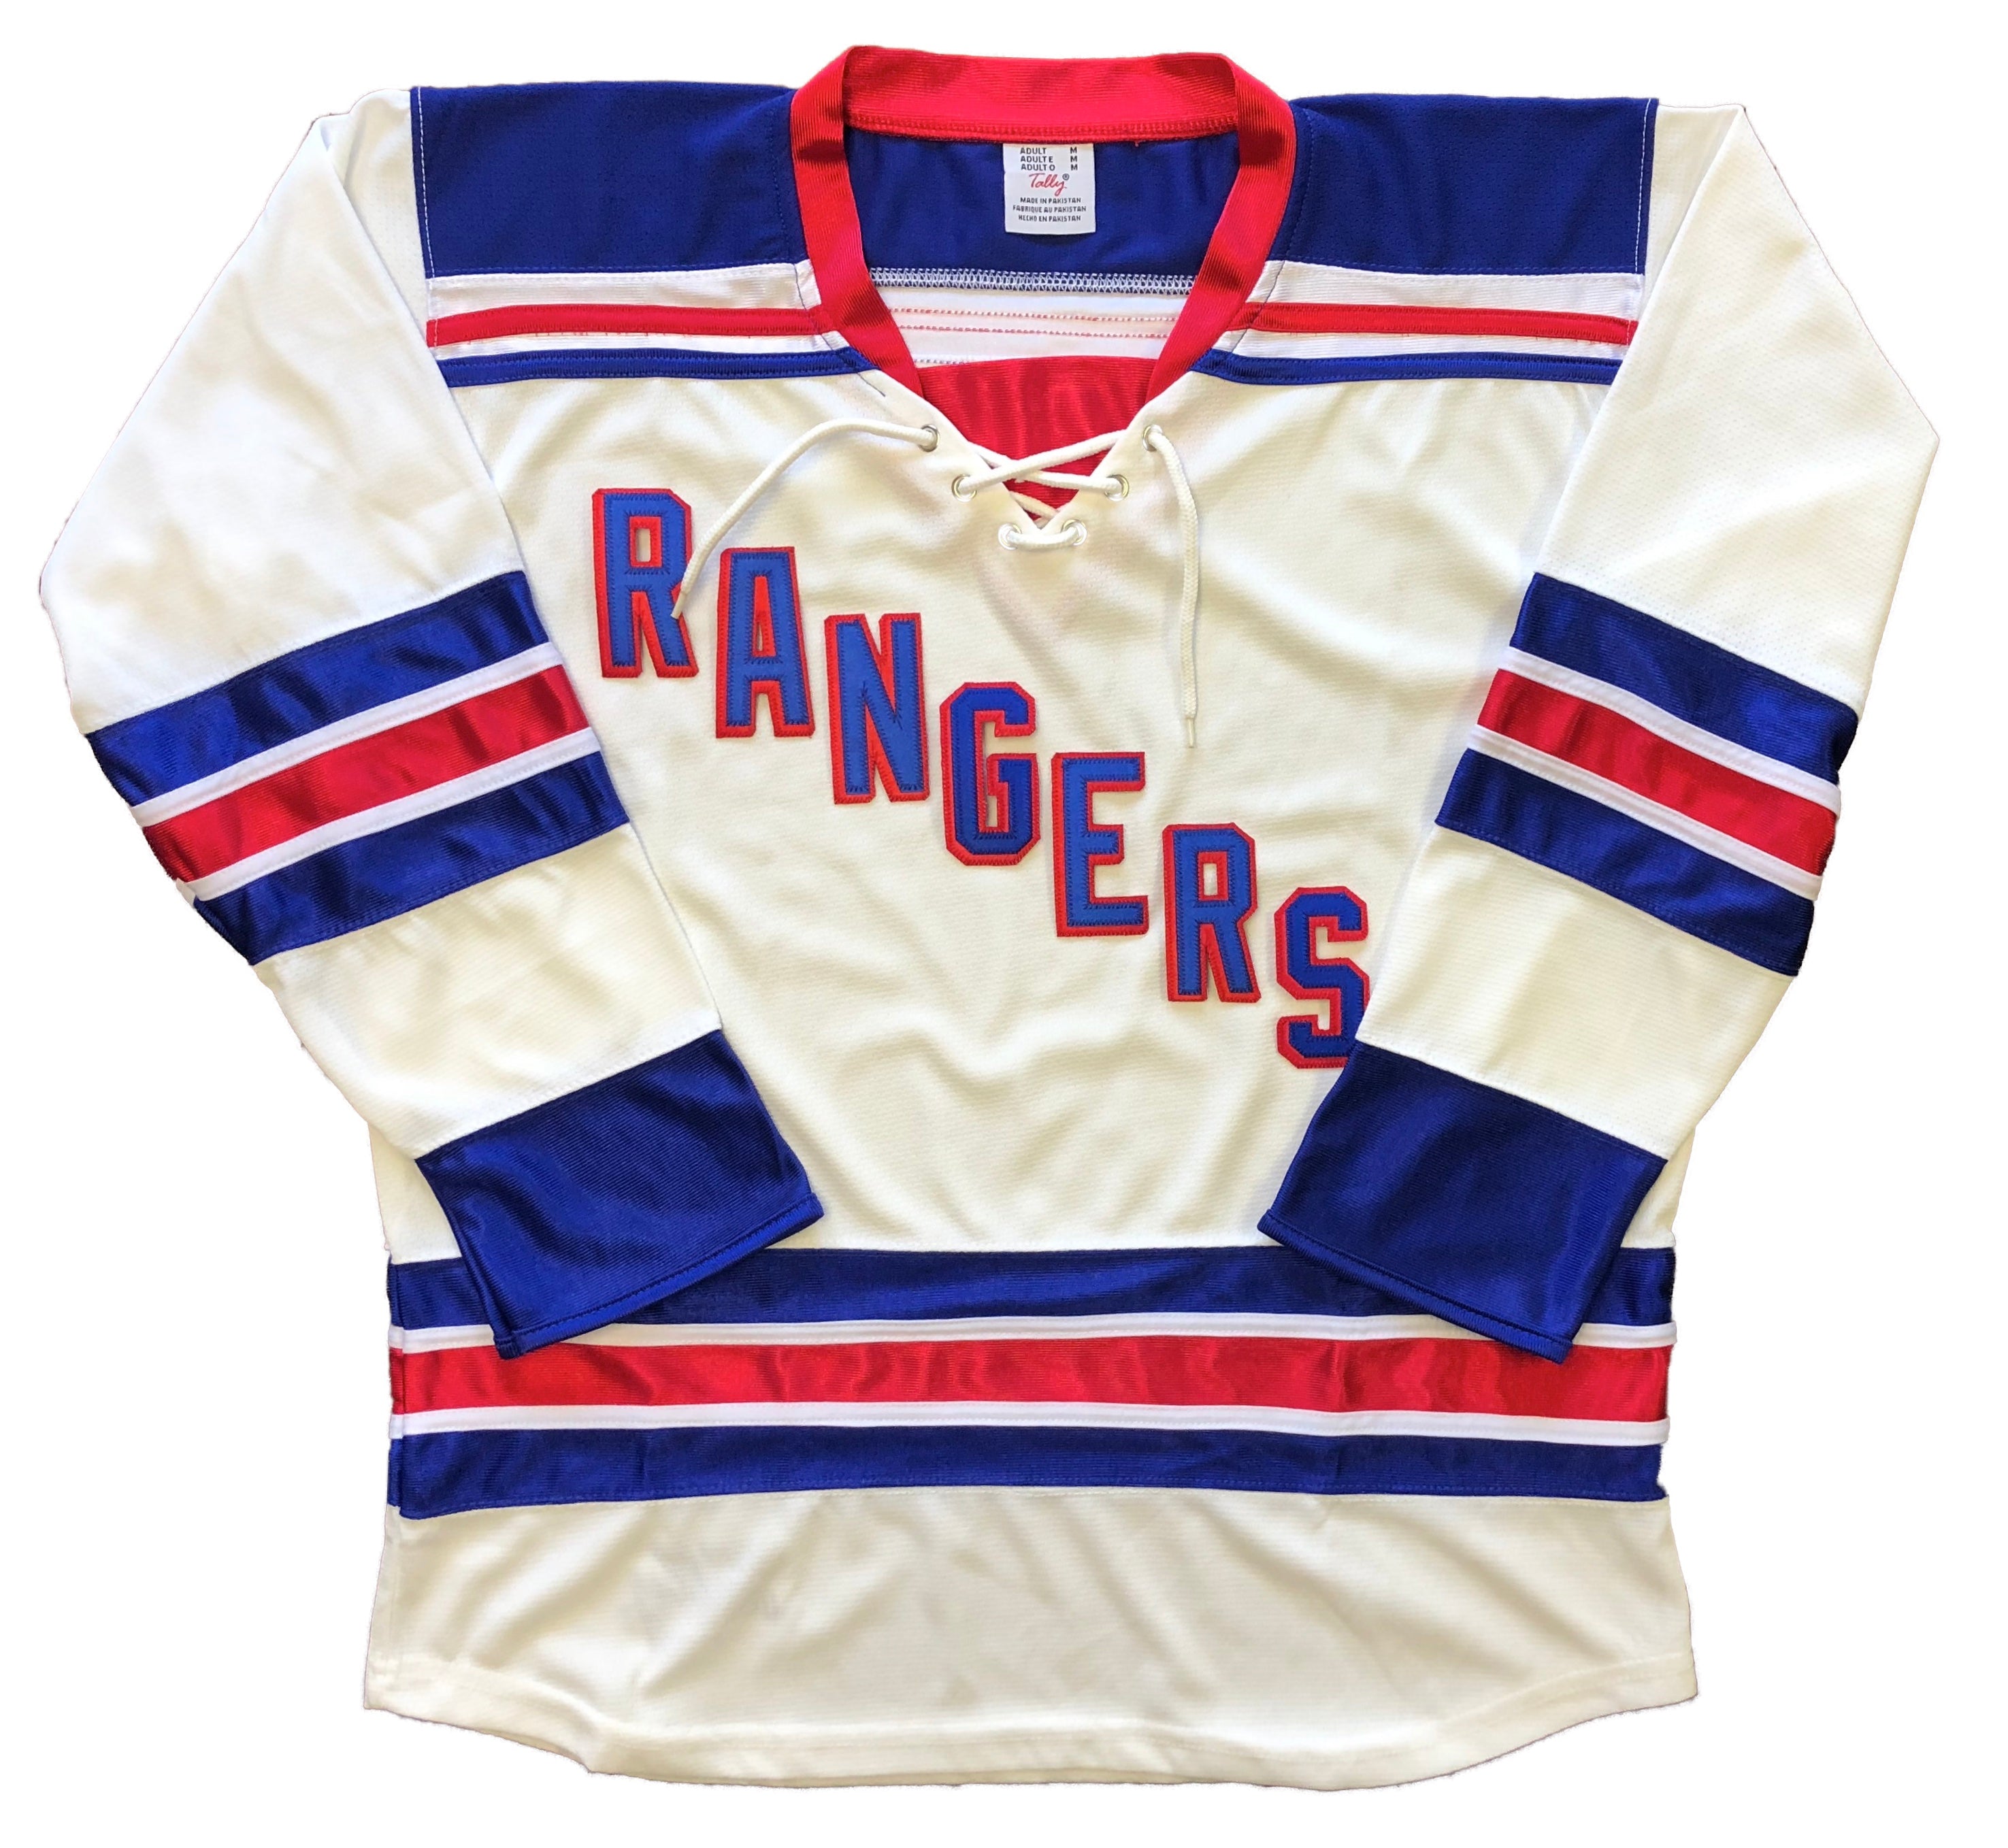 Custom Hockey Jerseys with Rangers in Twill Letters $59 | eBay